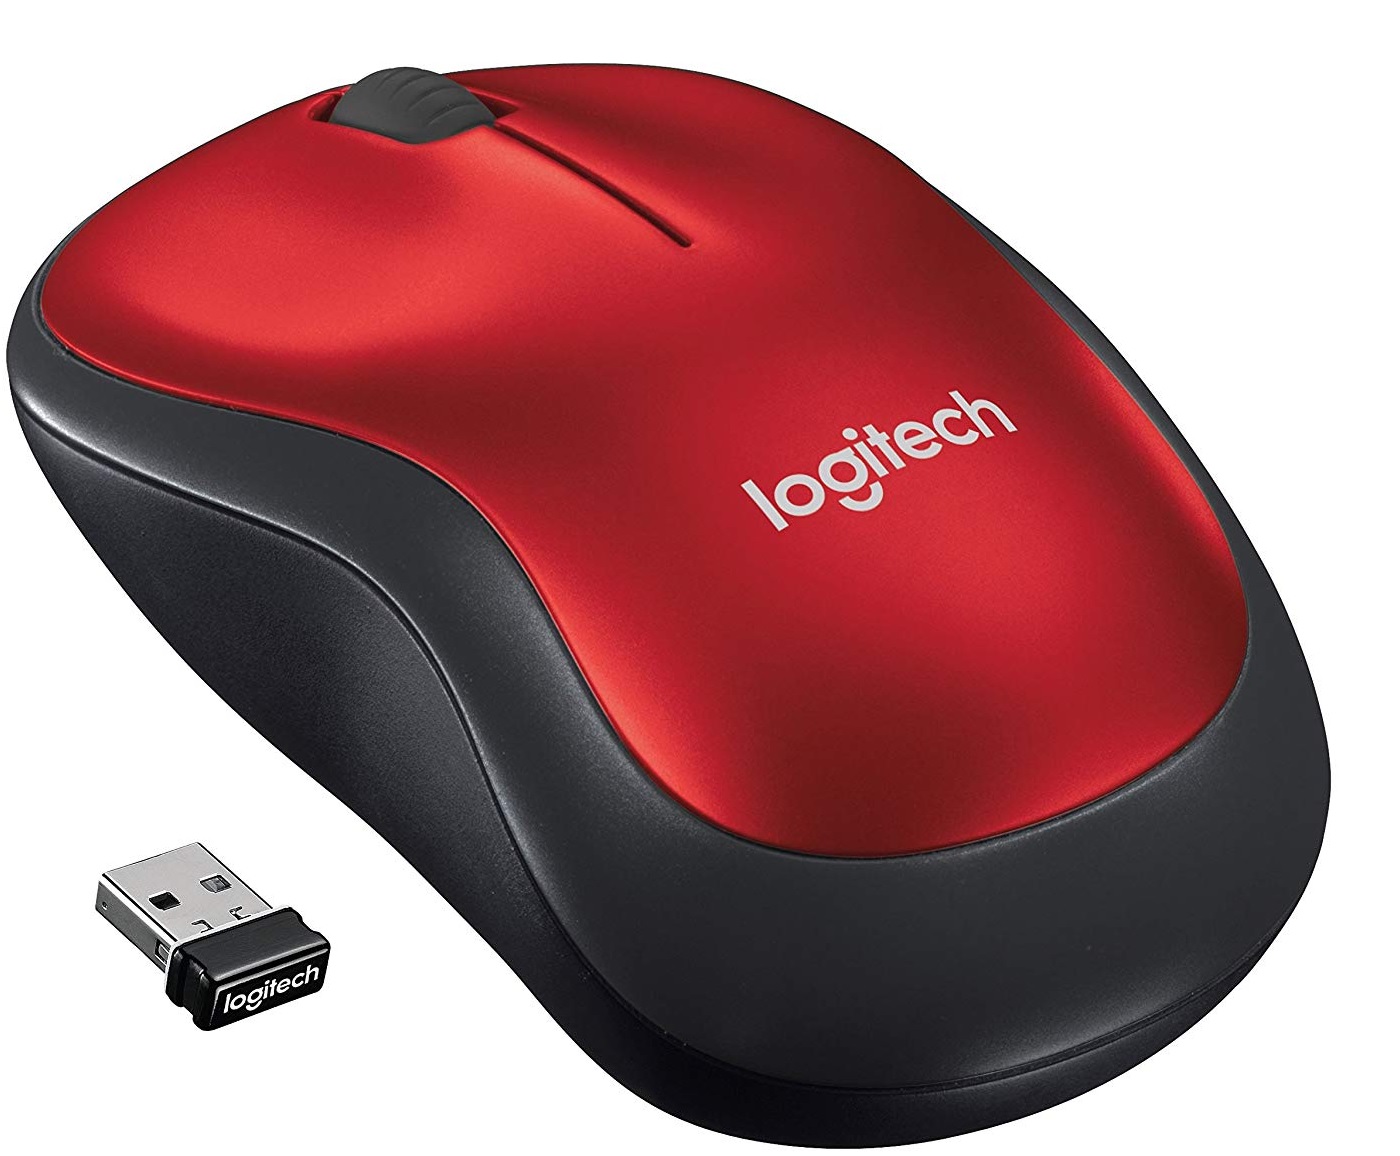 Mouse Inalámbrico - Logitech M185 / 910-003635 | 2109 - Mouse inalámbrico USB, Sensor: Optico, DPI: 1000, Botones: 3, Rueda de desplazamiento: 2D, Batería: 1x AAA, Conexión inalámbrica de 2.4 GHz, Radio de acción: 10 m, Conector: USB-A